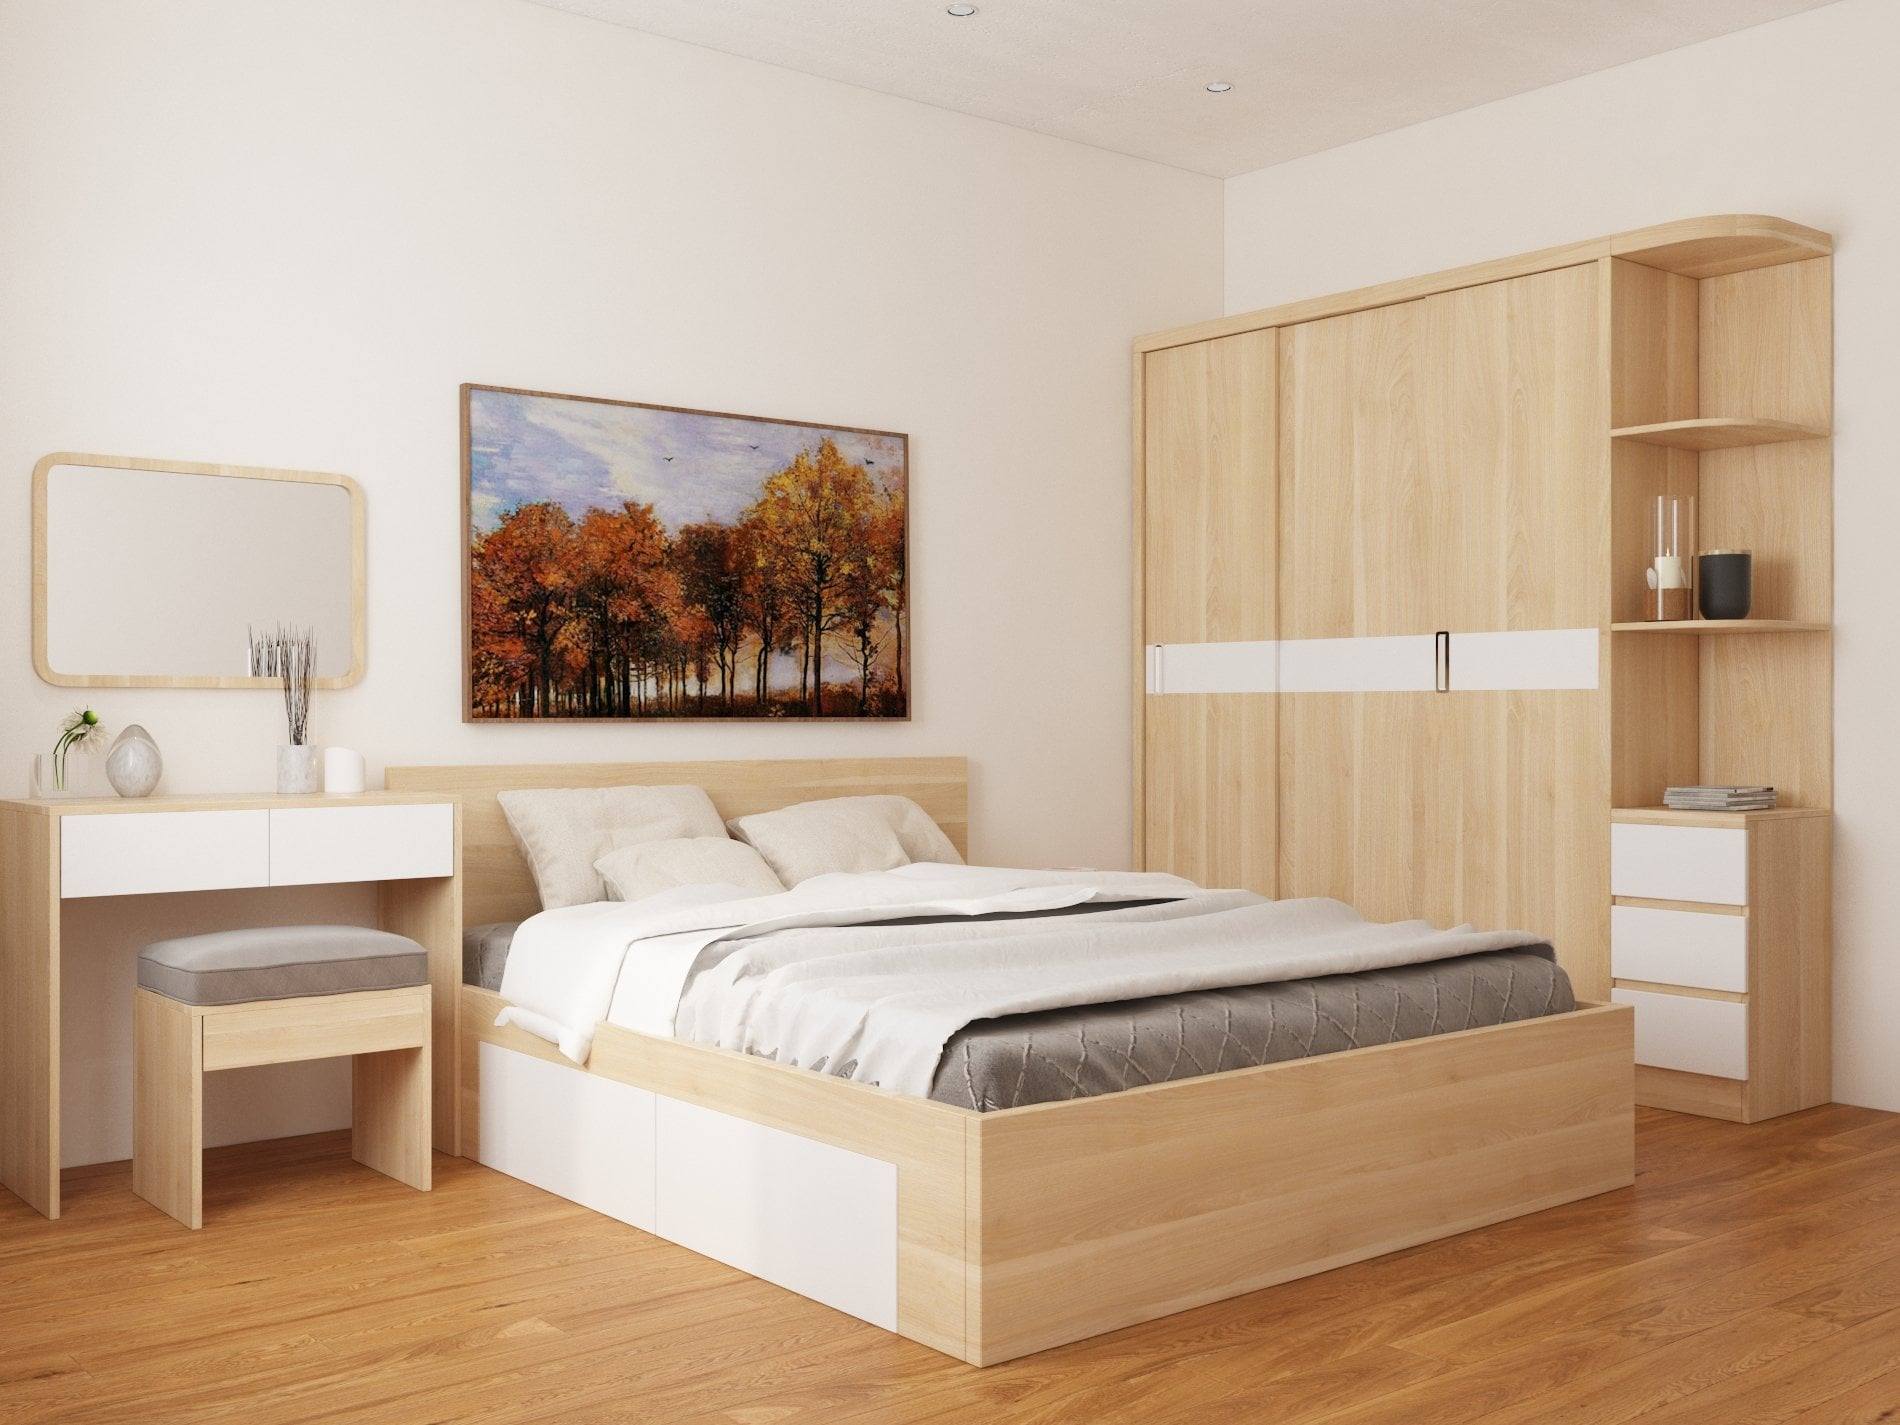 TOP giường có hộc phía dưới tốt nhất cho phòng ngủ cá nhân và gia đình